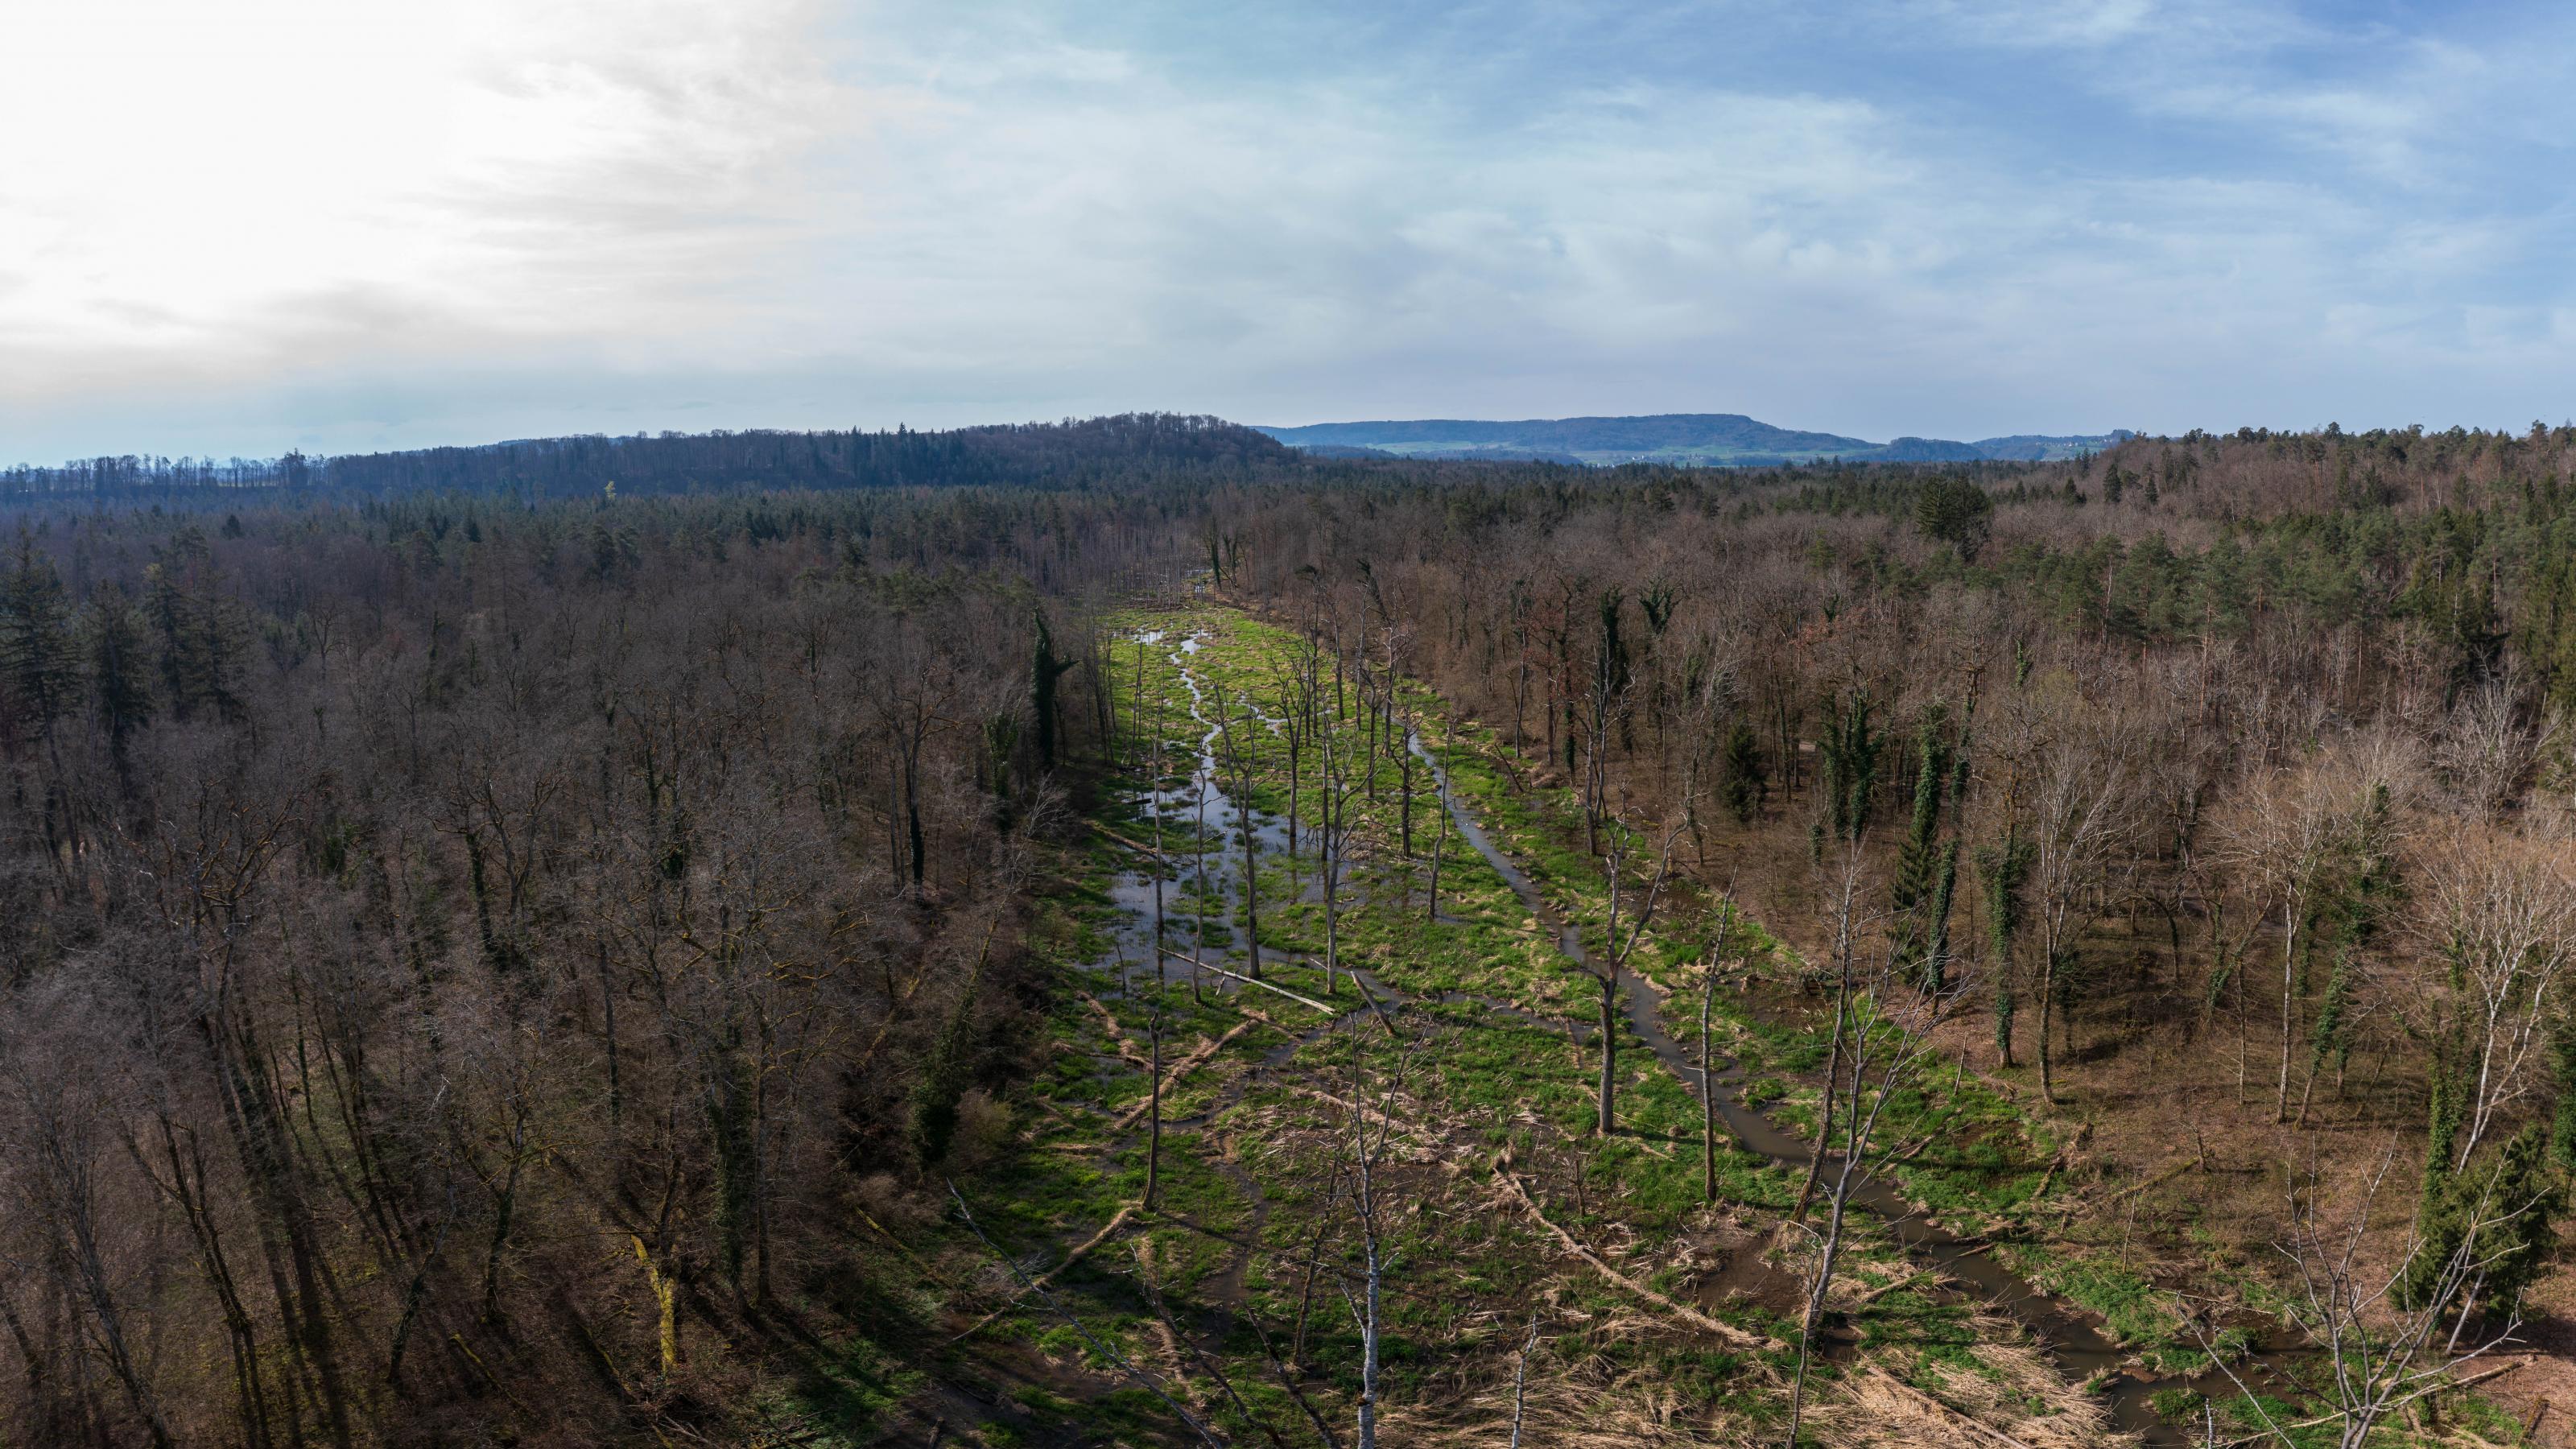 Luftaufnahme: Man sieht einen breiten Streifen Sumpfland, daneben stehen Bäume, dann wieder dichter Wald.